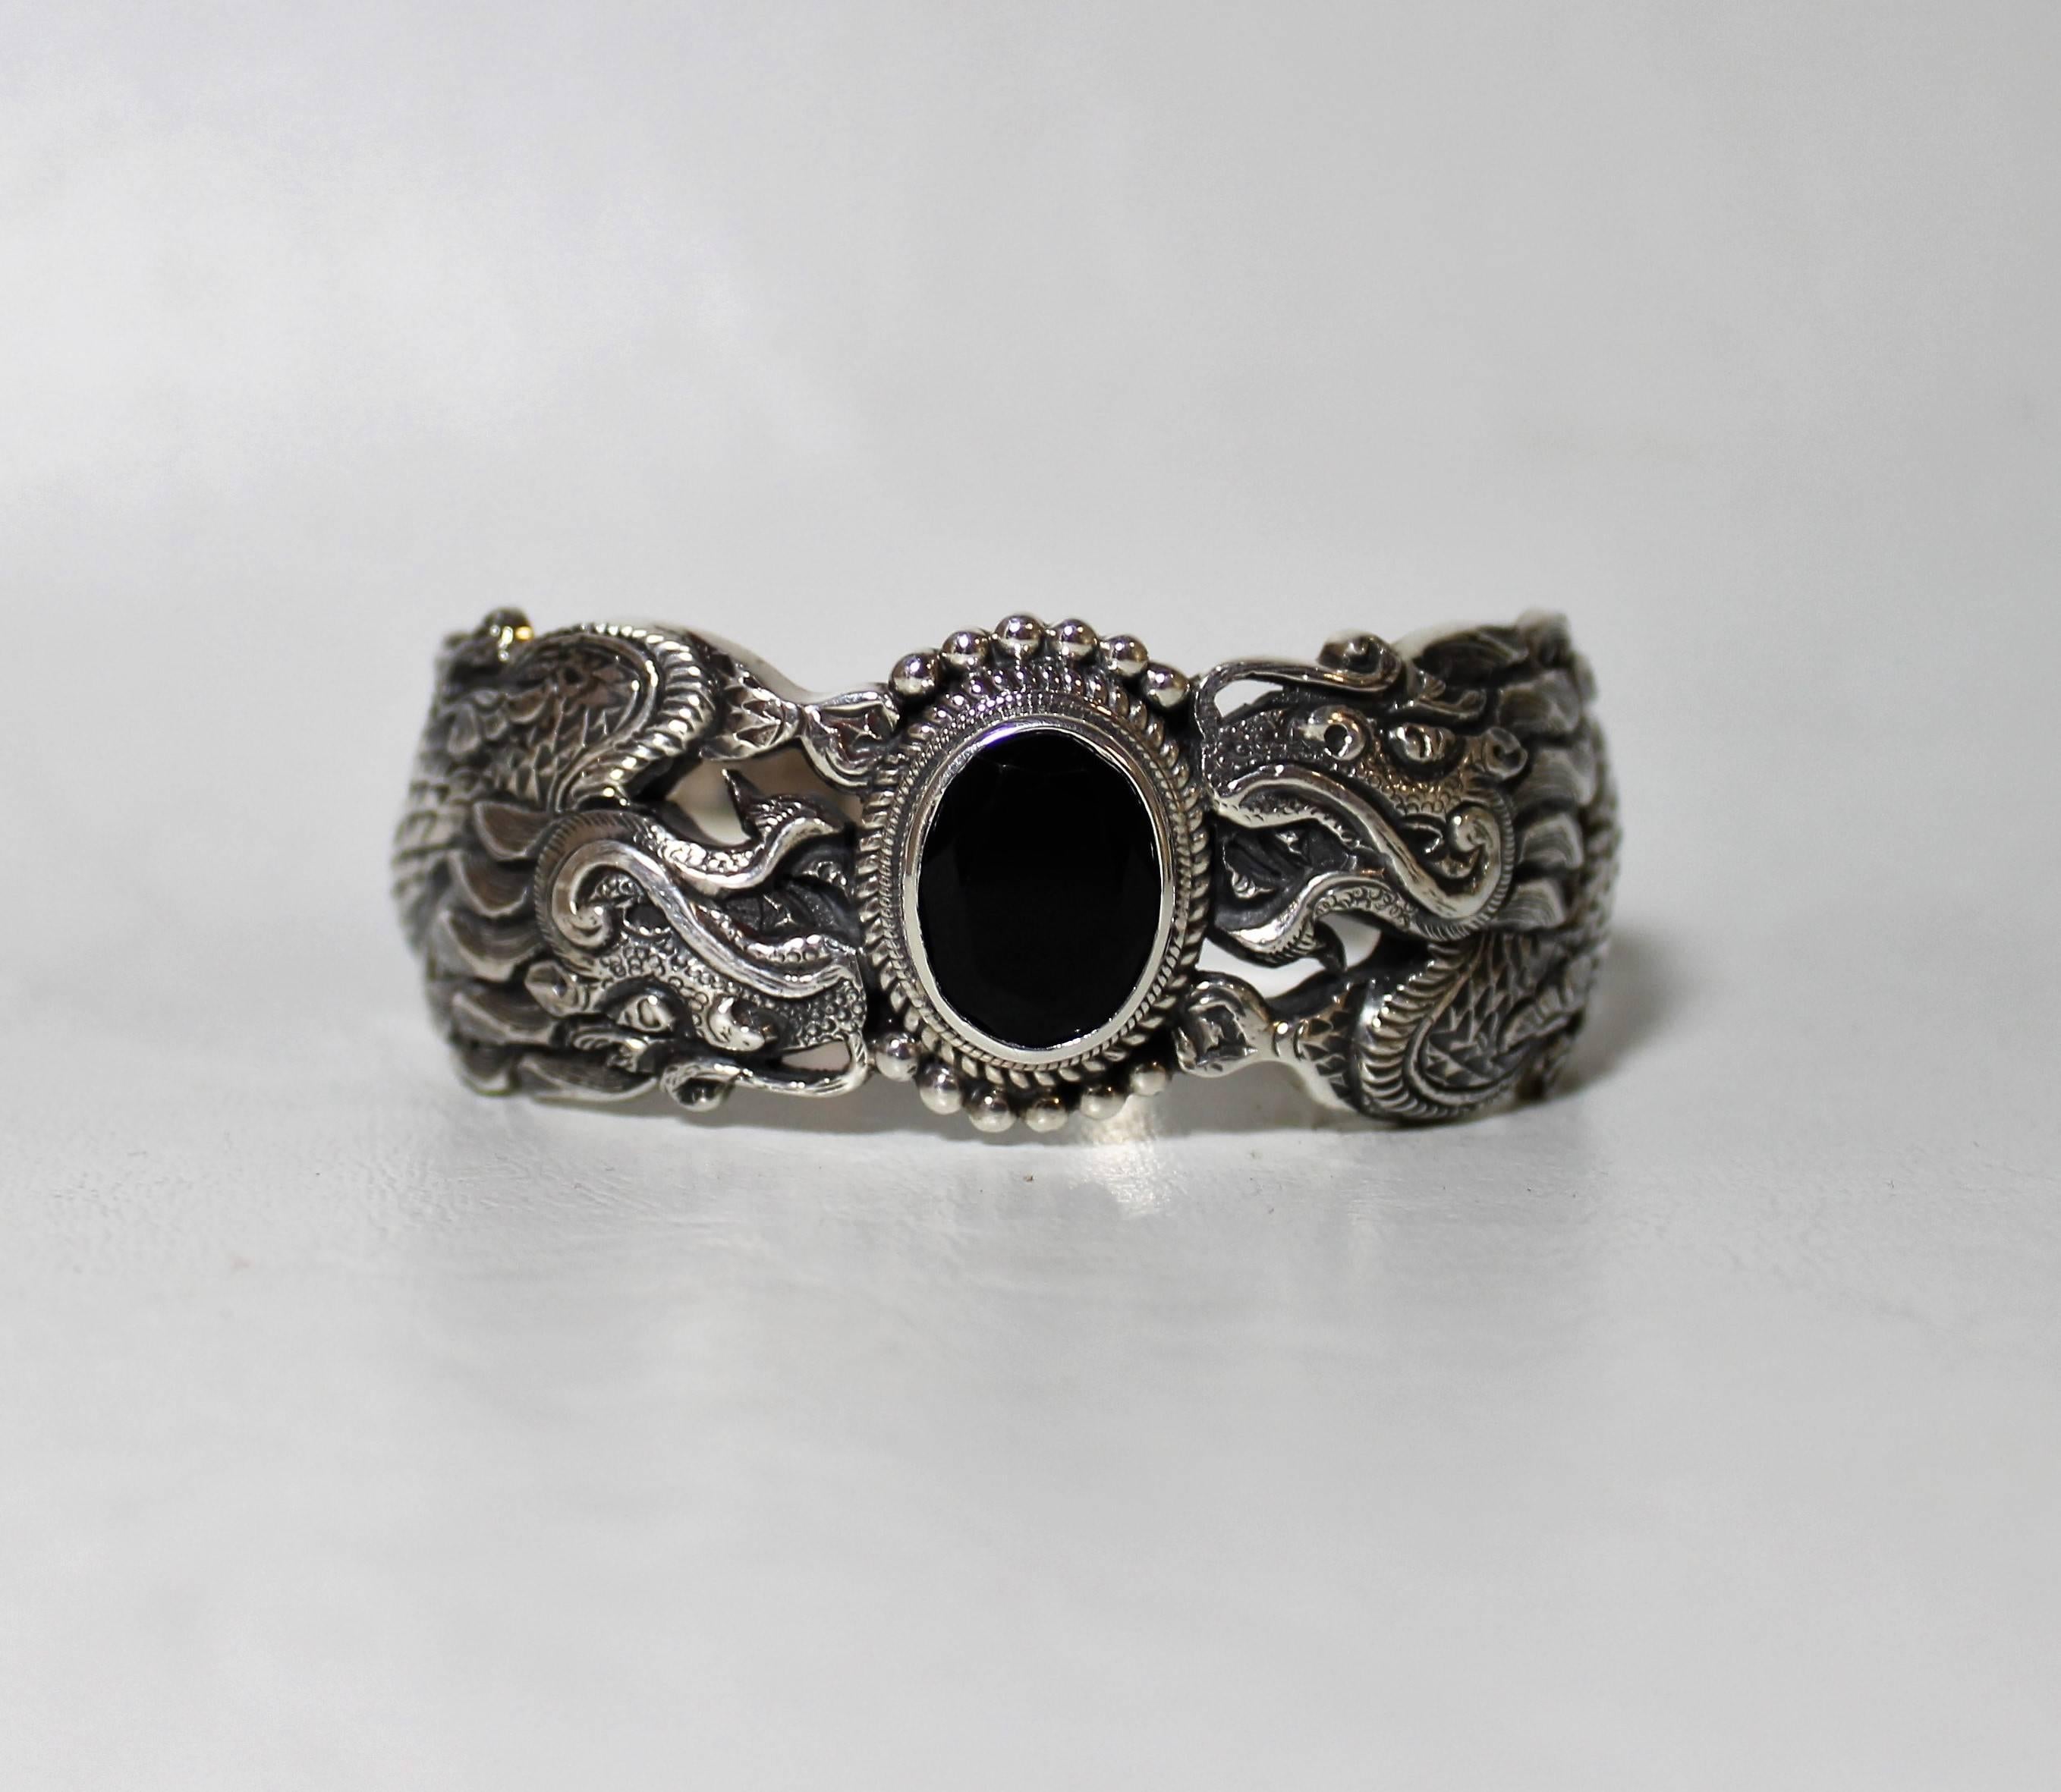 dragon bracelet silver